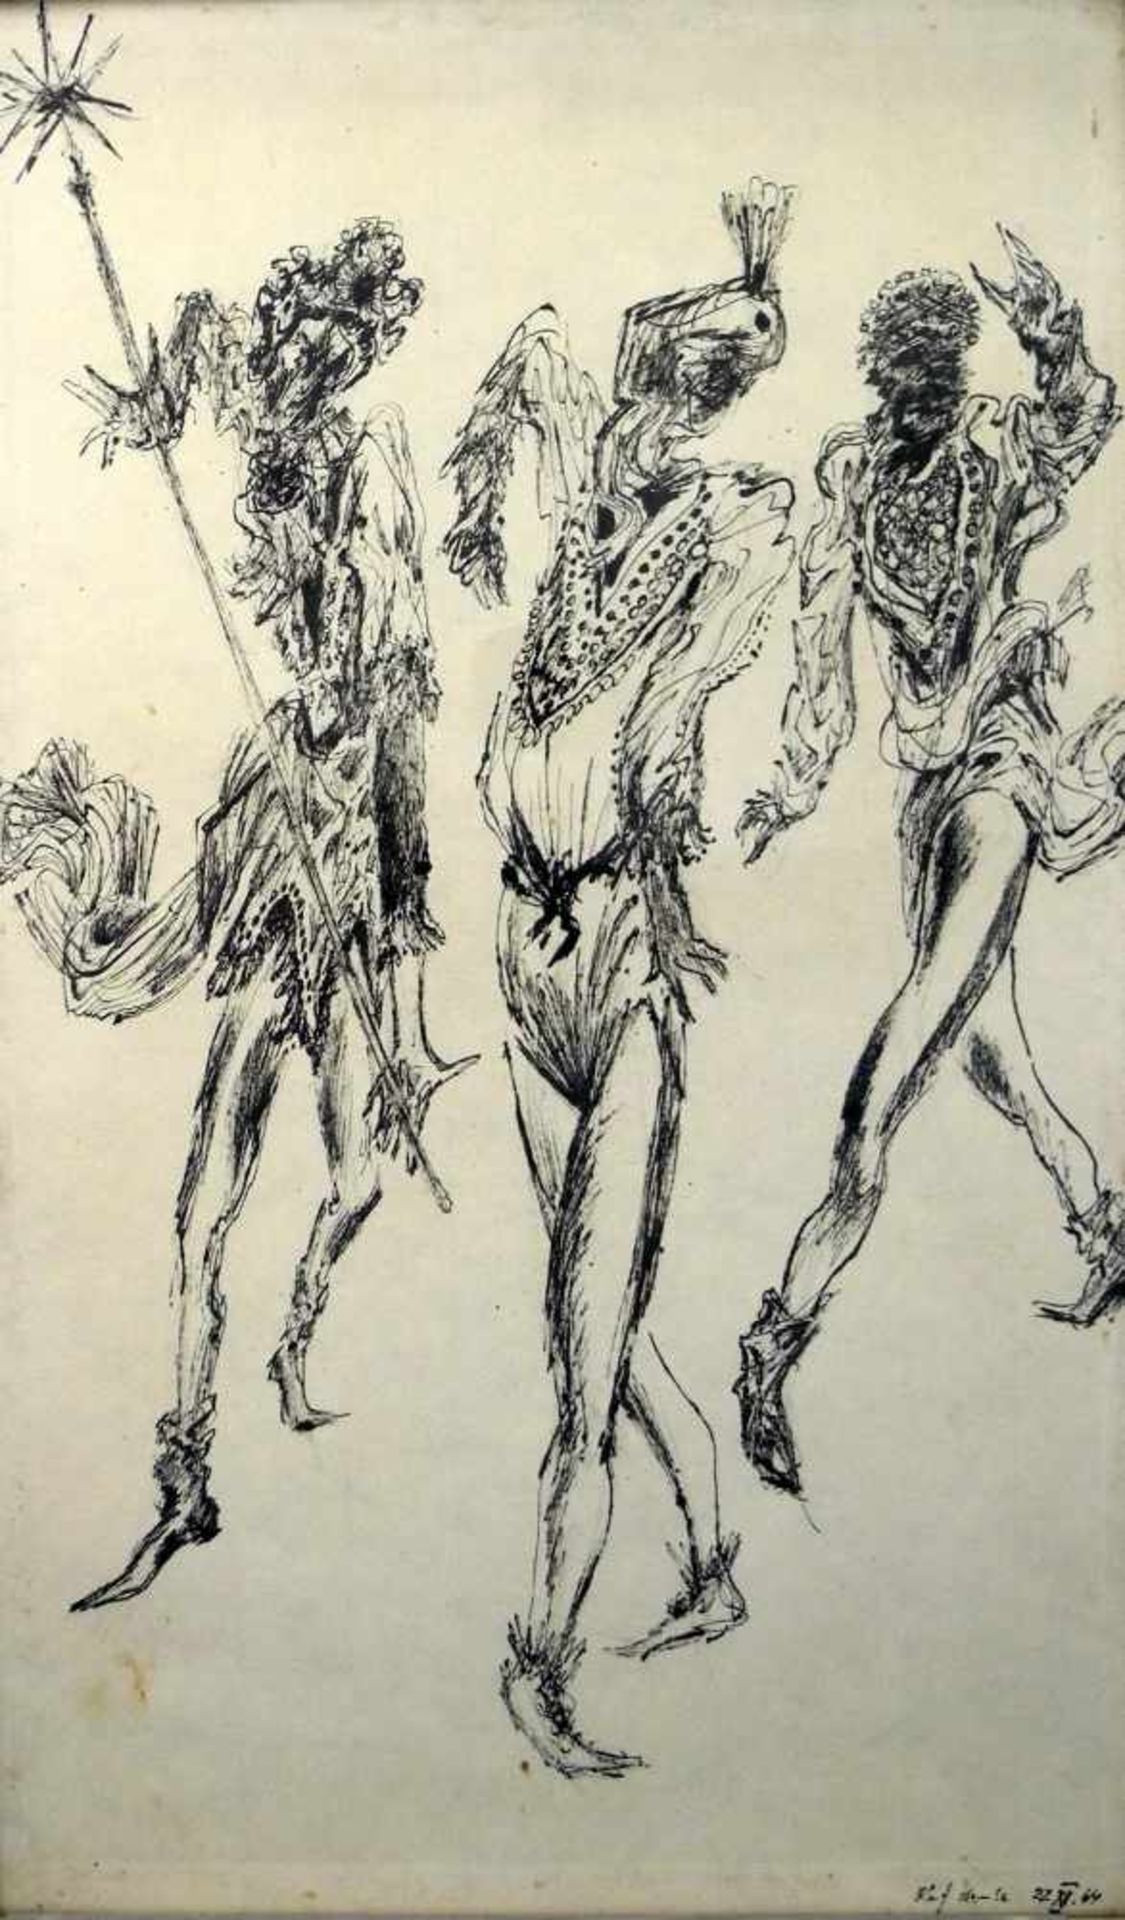 MoriskentänzernTusche/Papier, Bewegungsvolle Darstellung von 3 Moriskentänzern. Unten rechts